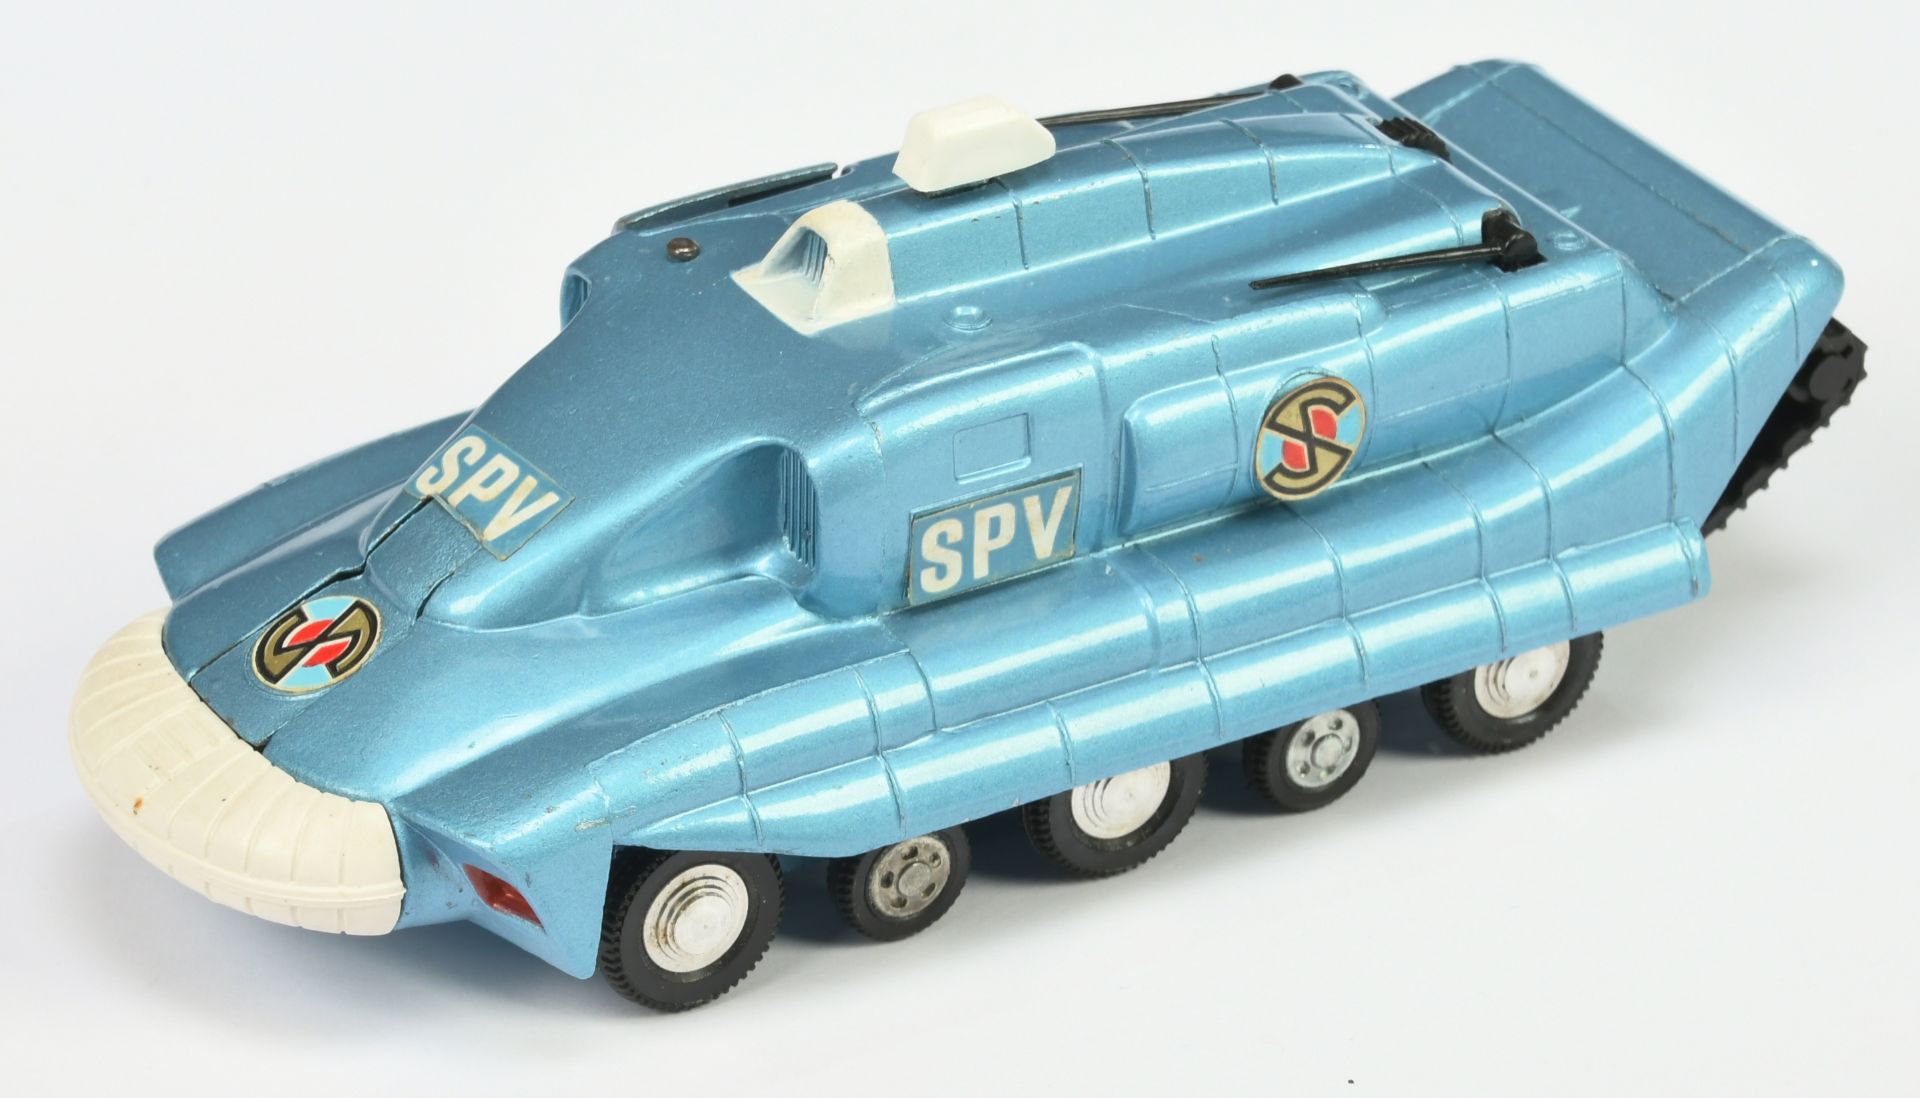 Dinky Toys 104 "Captain Scarlet"  Spectrum Pursuit Vehicle - Blue body, white front bumper, black...